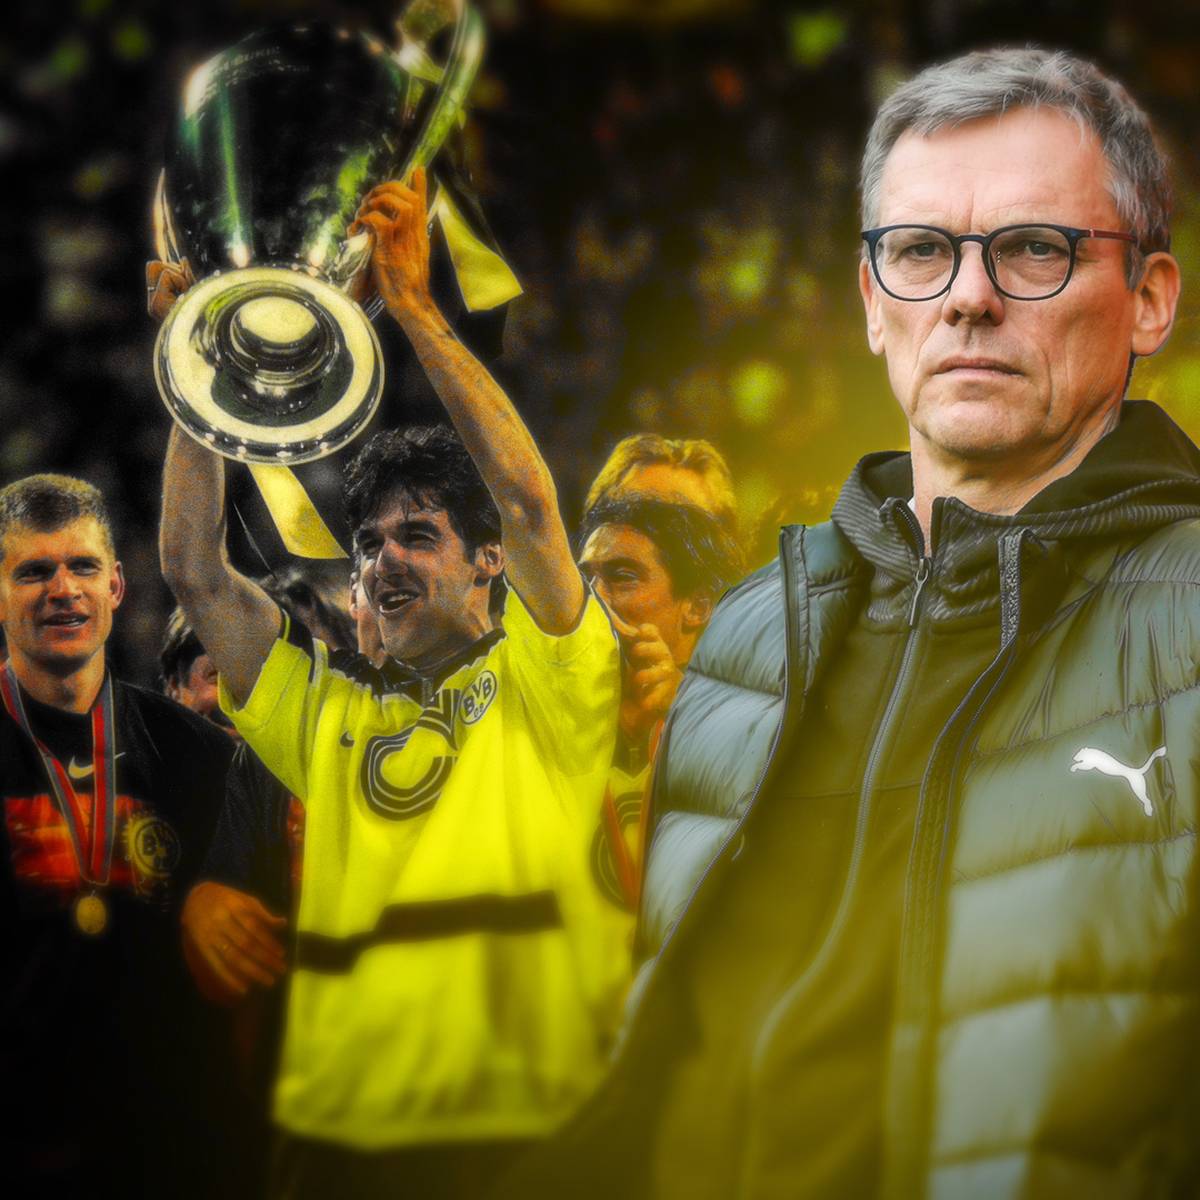 Vor 25 Jahren gewann Borussia Dortmund die Champions League. Der damalige Co-Trainer Michael Henke blickt zurück und analysiert auch die aktuelle Lage bei den Schwarz-Gelben. Dabei nimmt er vor allem einen Neuzugang in die Pflicht. 